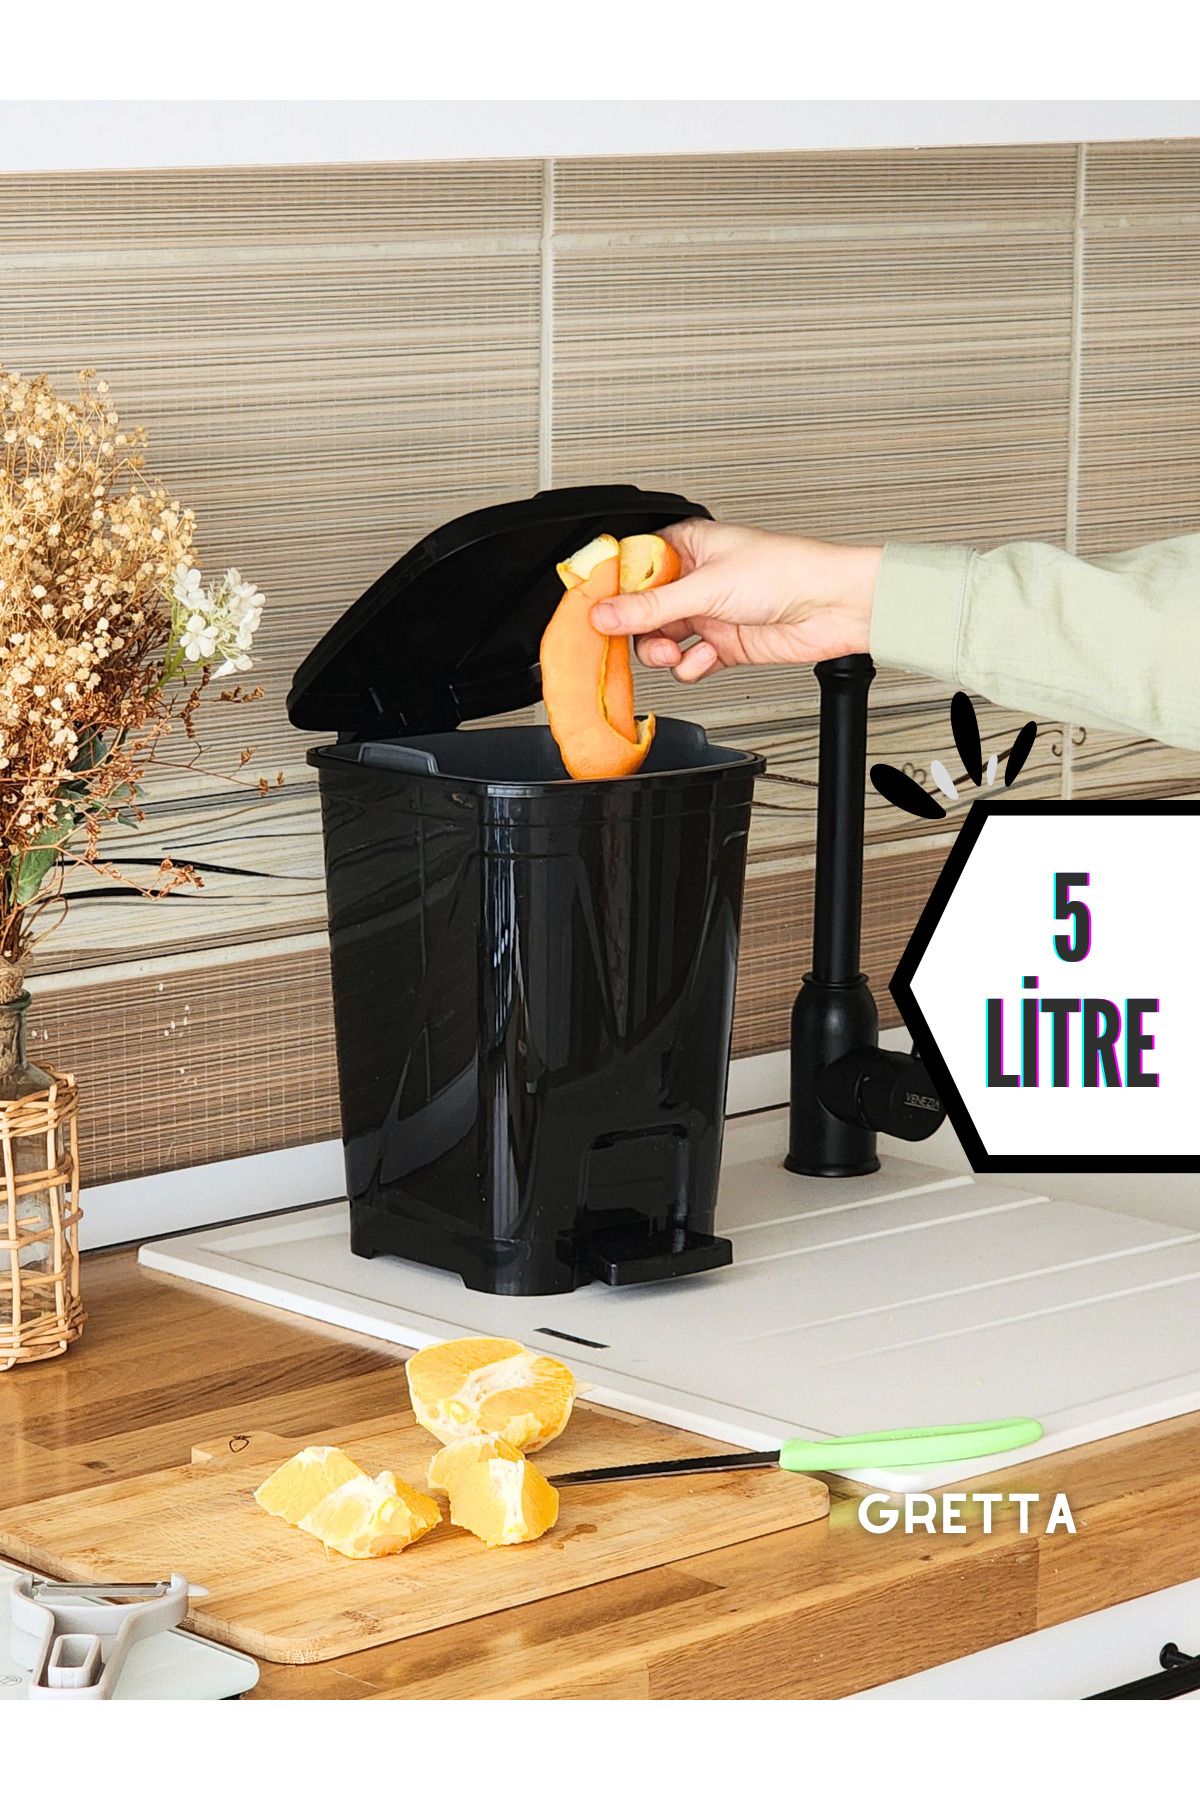 Gretta 5 Litre Siyah Kare Pedallı Çöp Kovası - Mutfak Tezgah Üstü, Banyo Ve Ofis Için Çöp Kovası